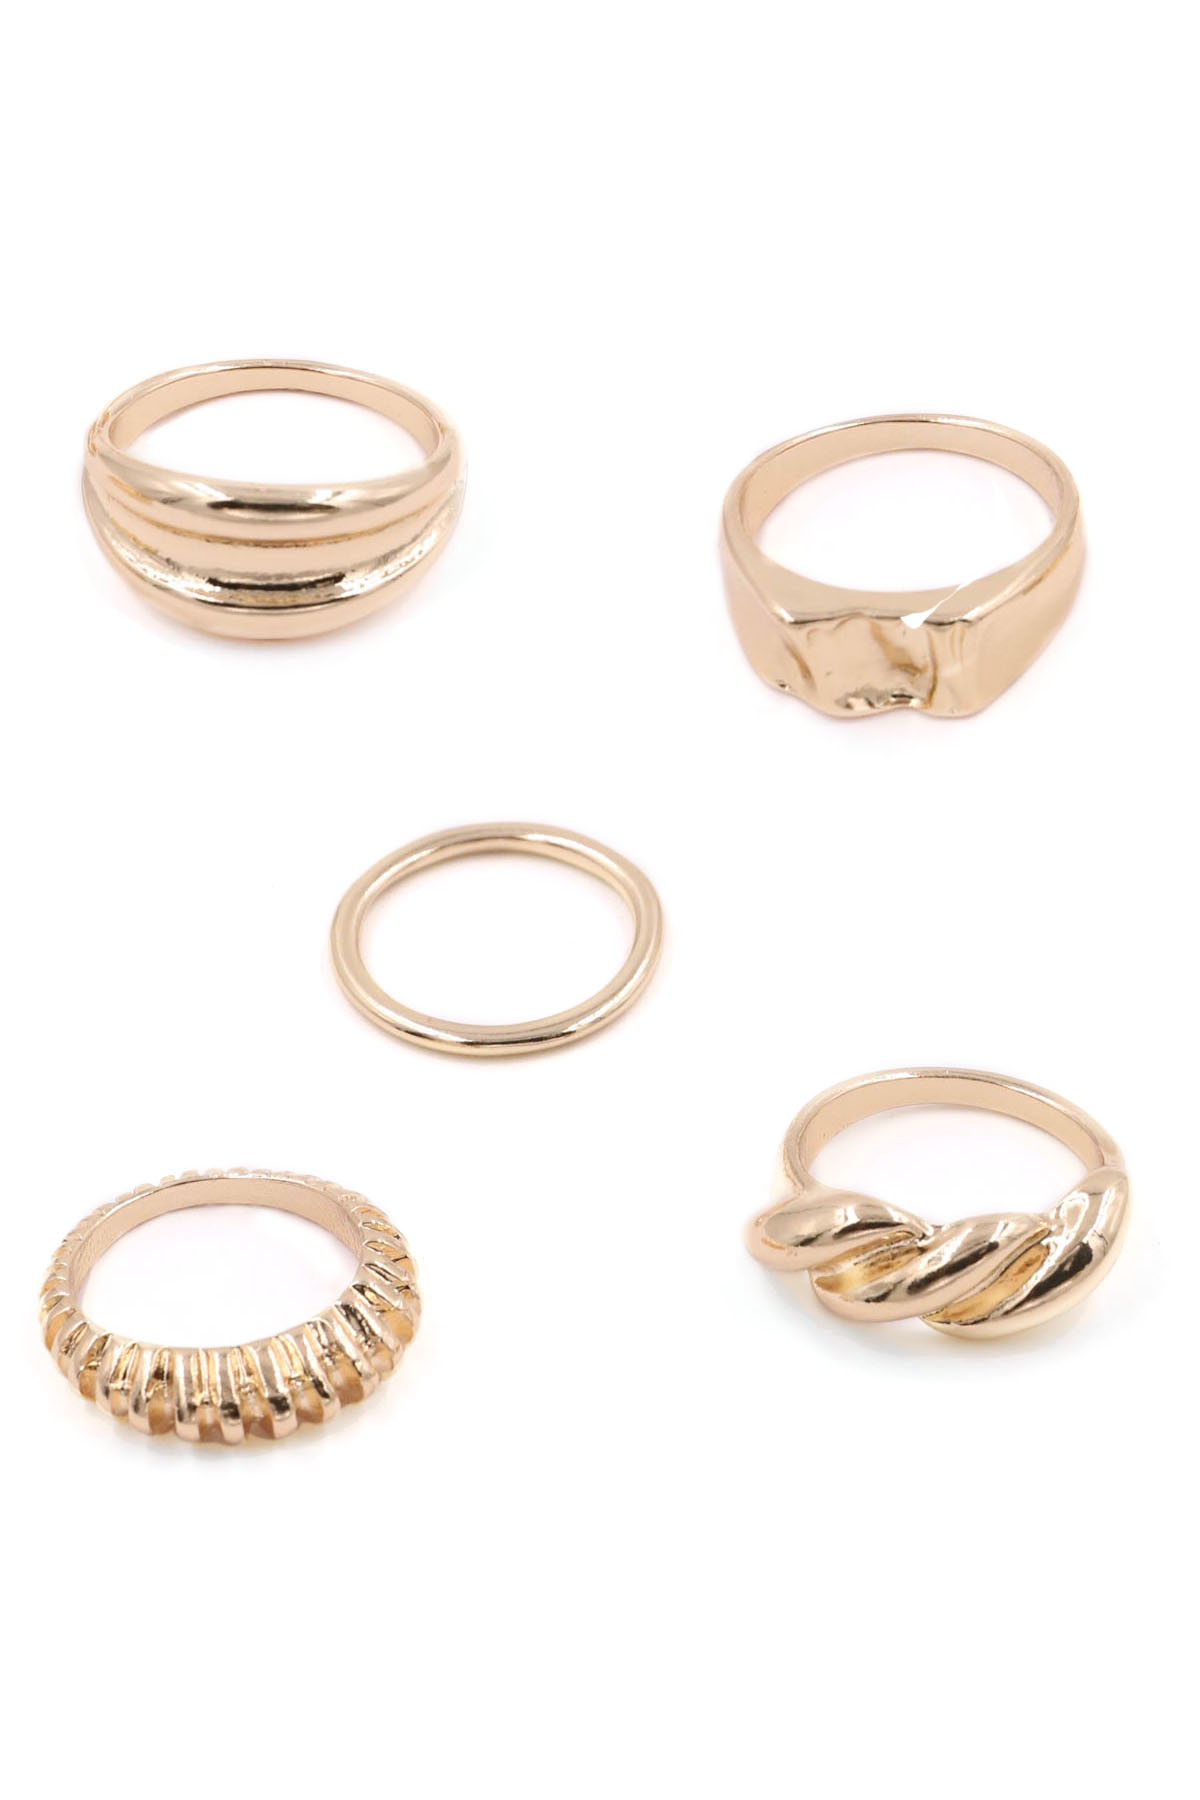 WORN GOLD Metal Ring Set - Rings